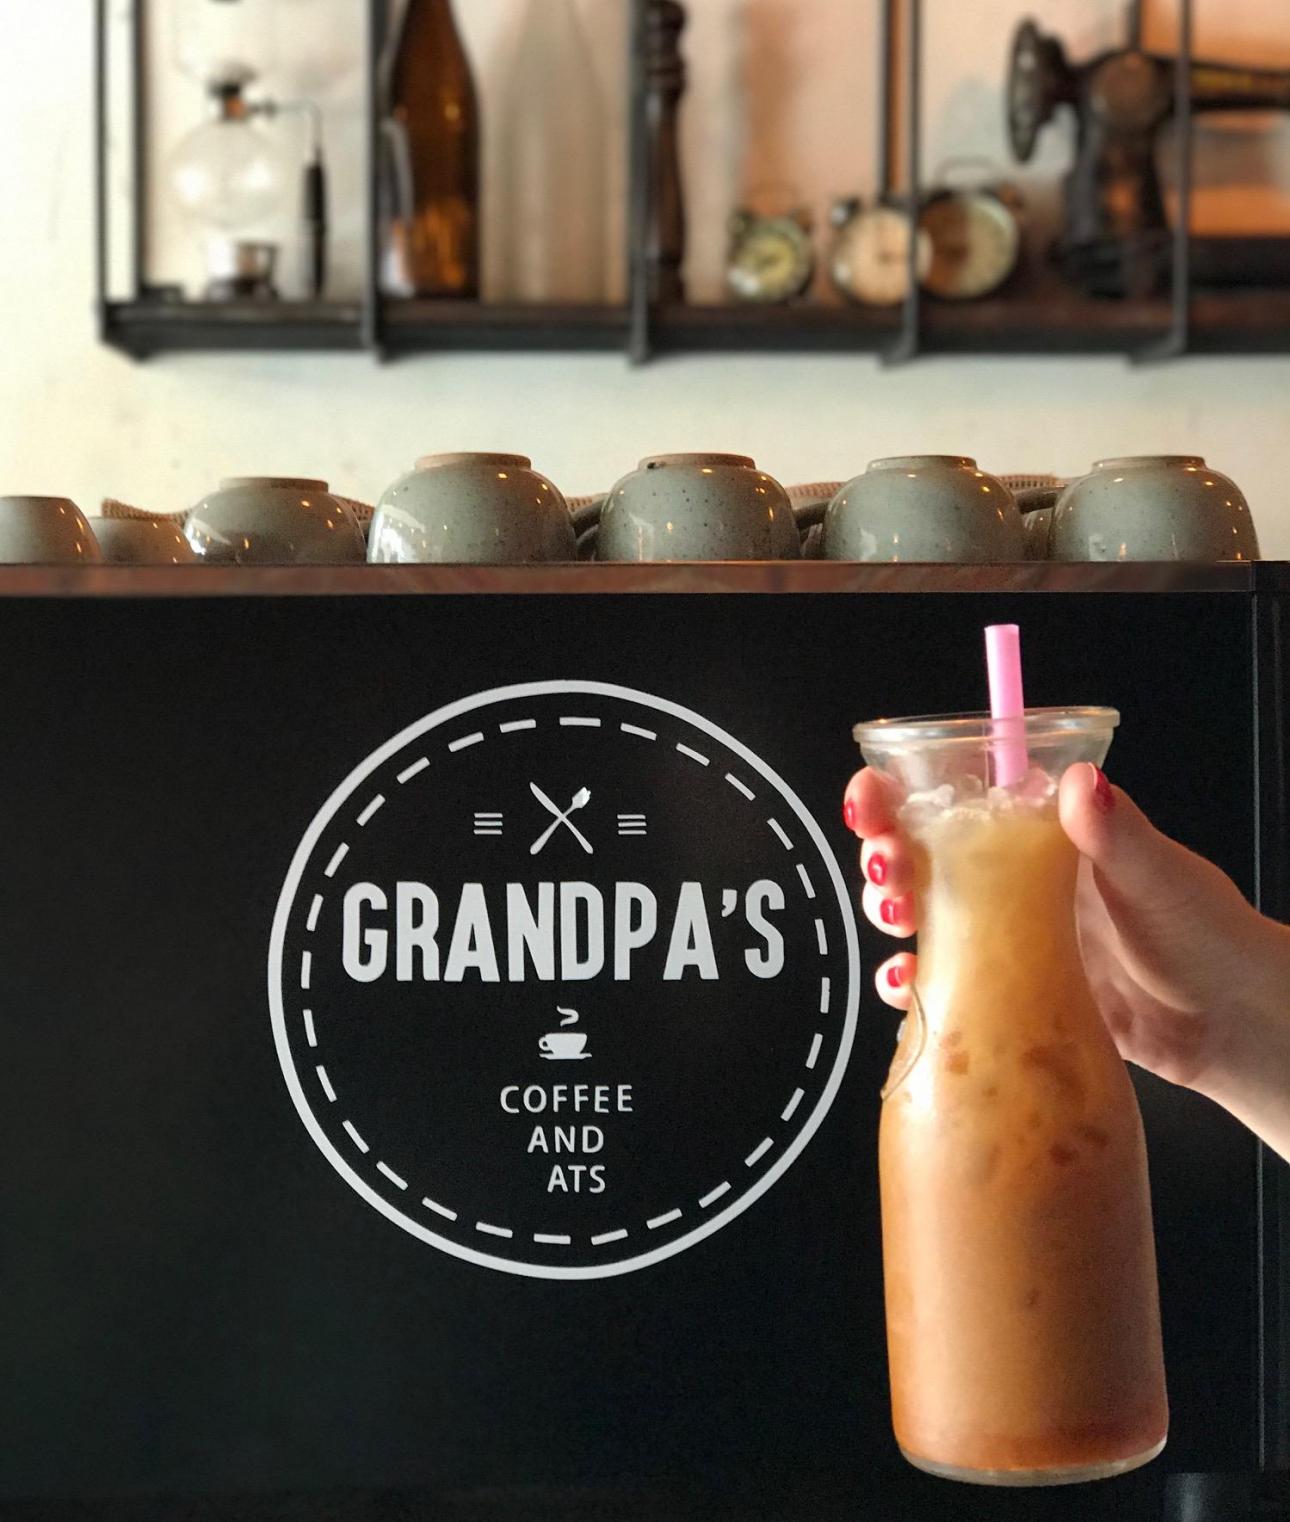 Grandpas Coffee and Eats er stedet, hvis man skal have en god iskaffe i varmen.